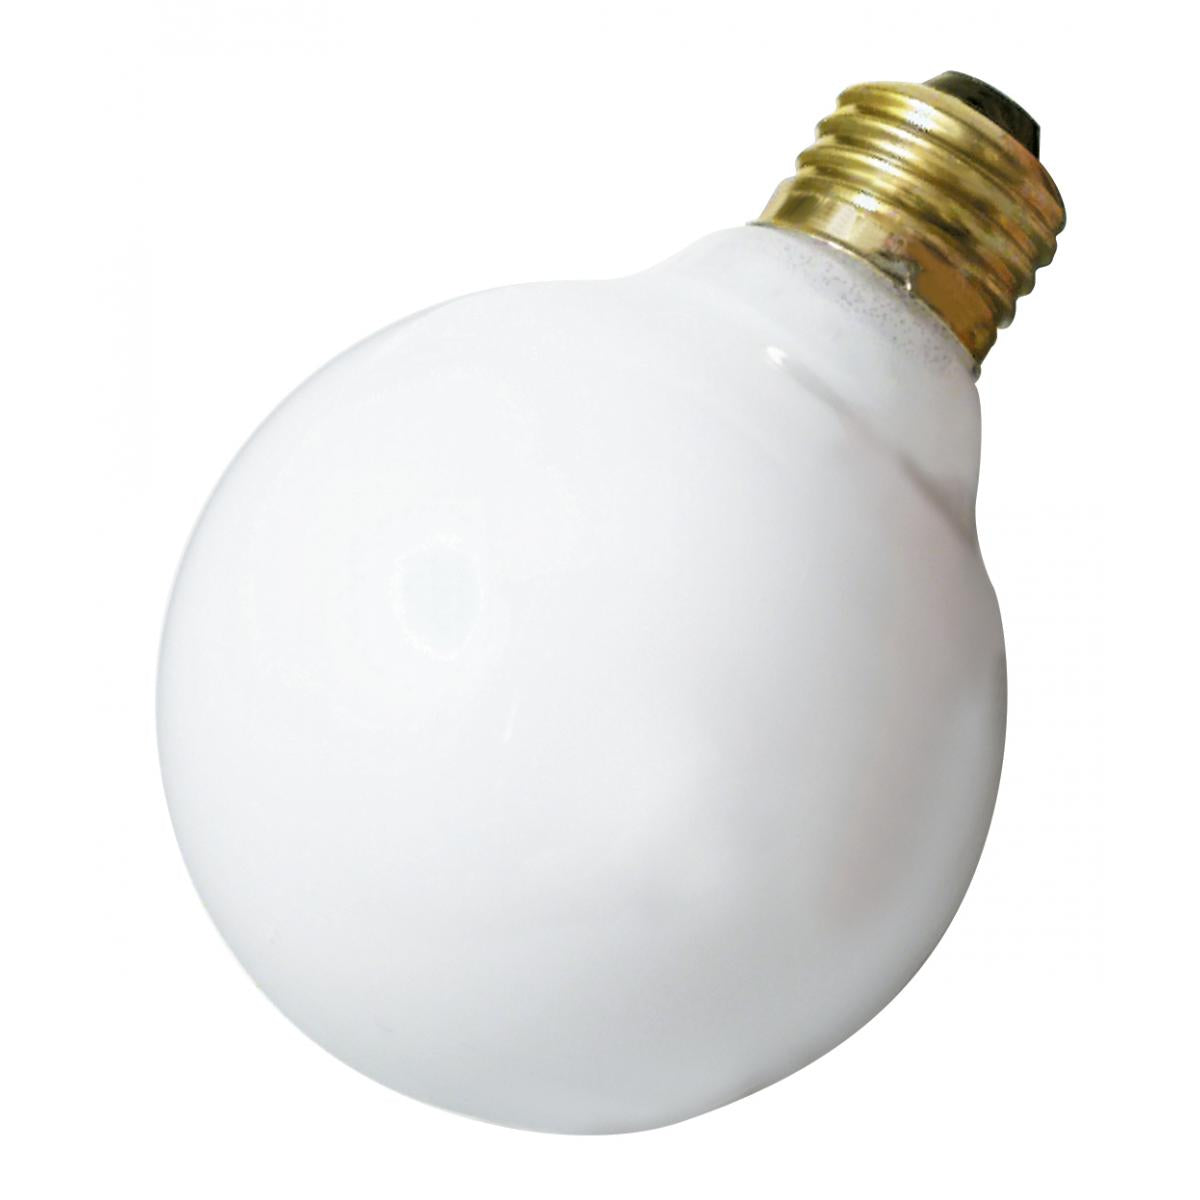 G25 Globe Bulb